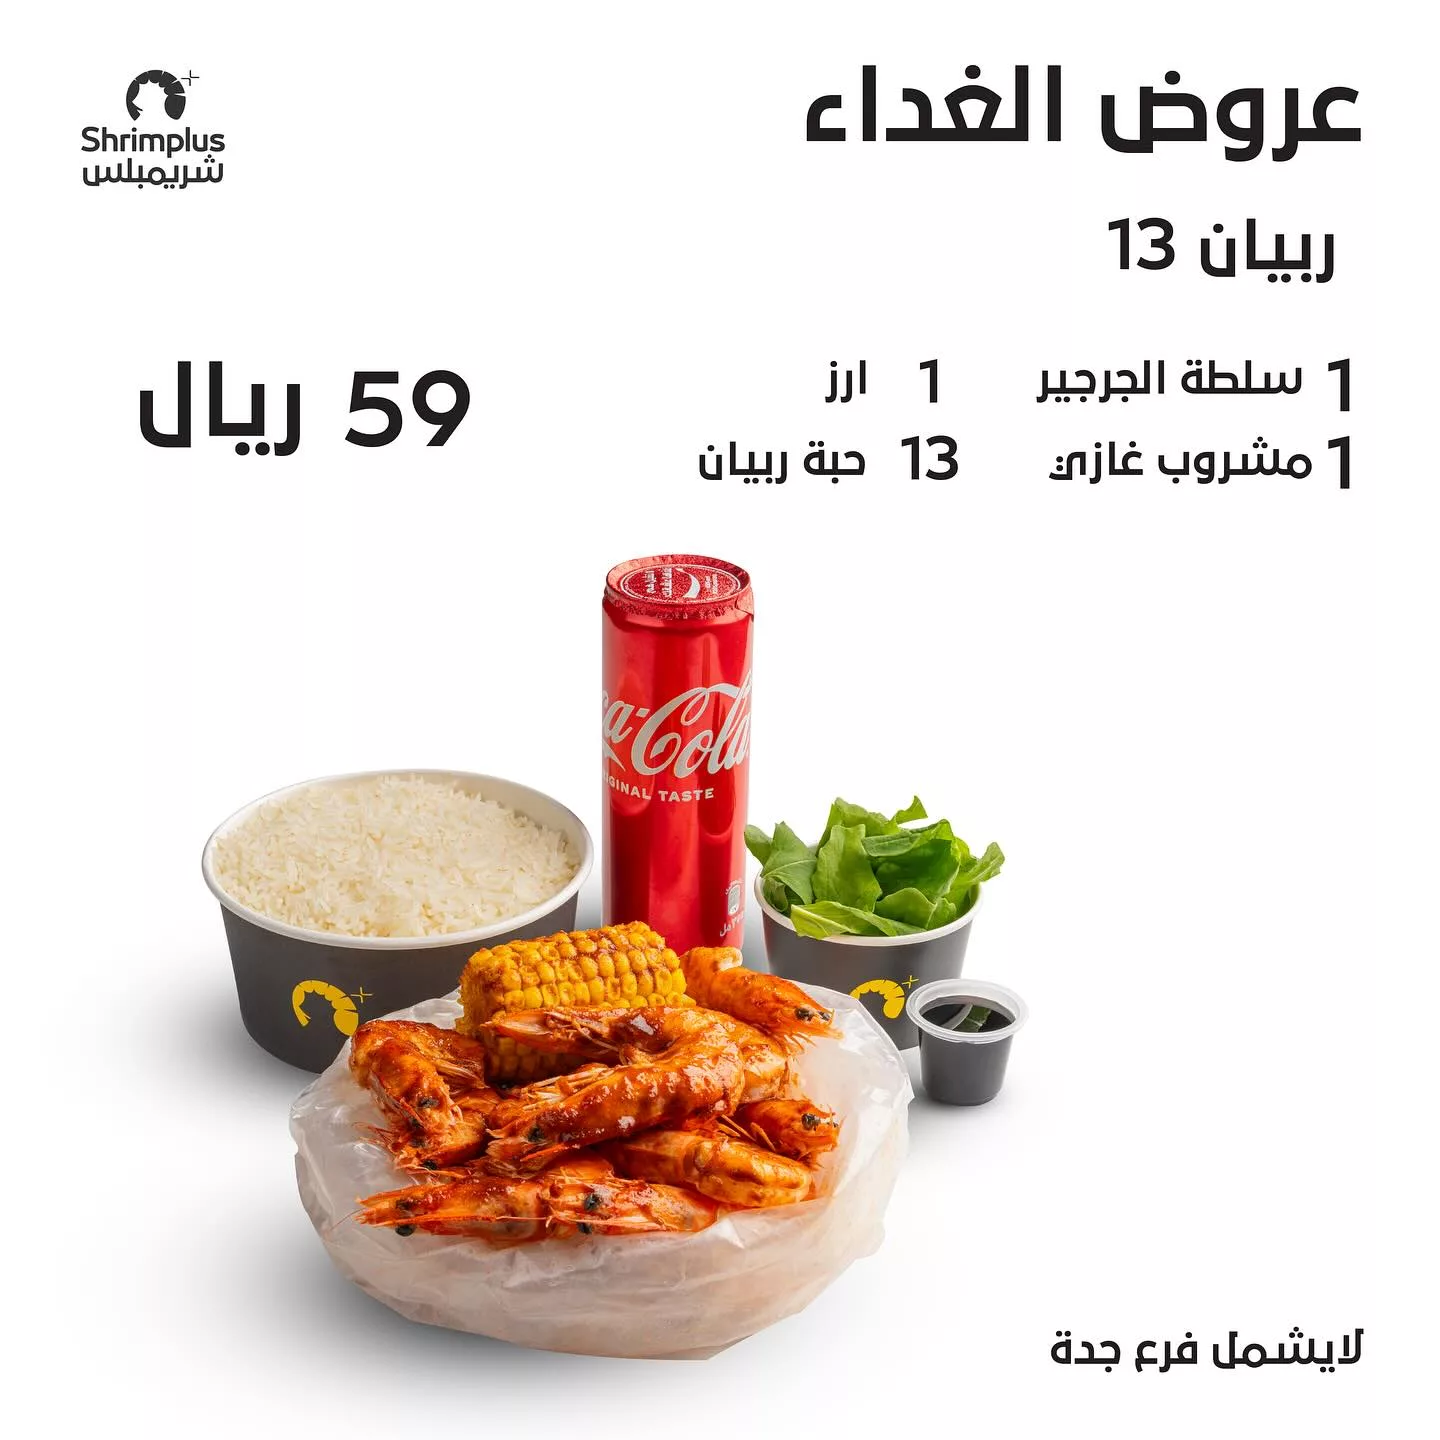 441953441 18434124034027836 8514307509912985507 n jpg - عروض مطاعم السعودية اليوم صفحة واحدة | اشهي الأكلات بأرخص الاسعار